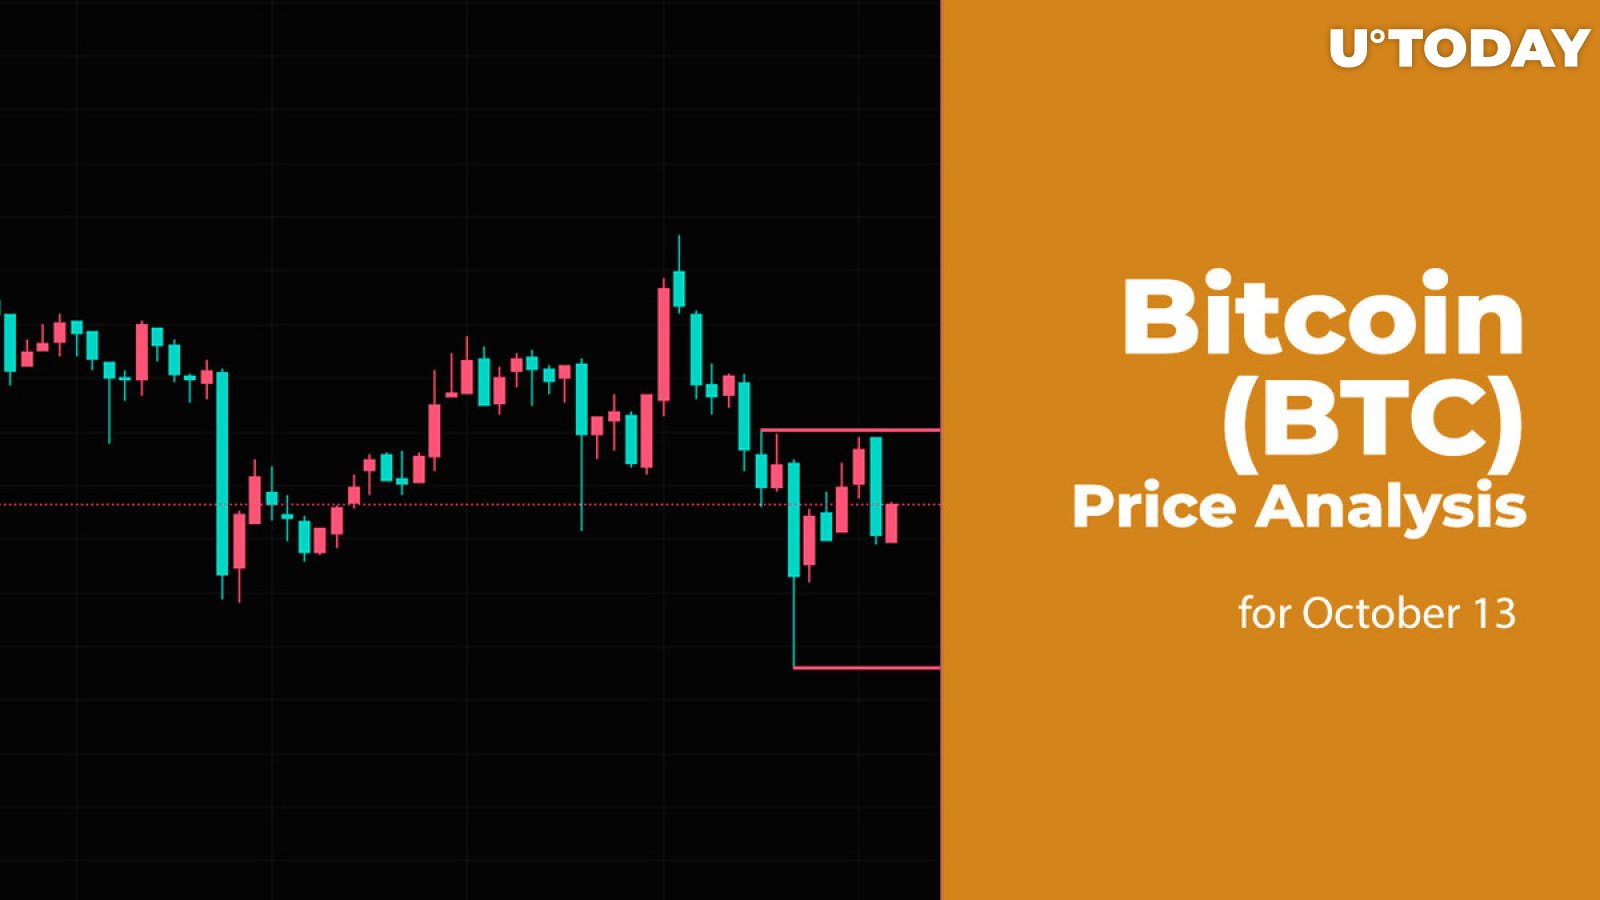 Bitcoin (BTC) Price Analysis for October 13